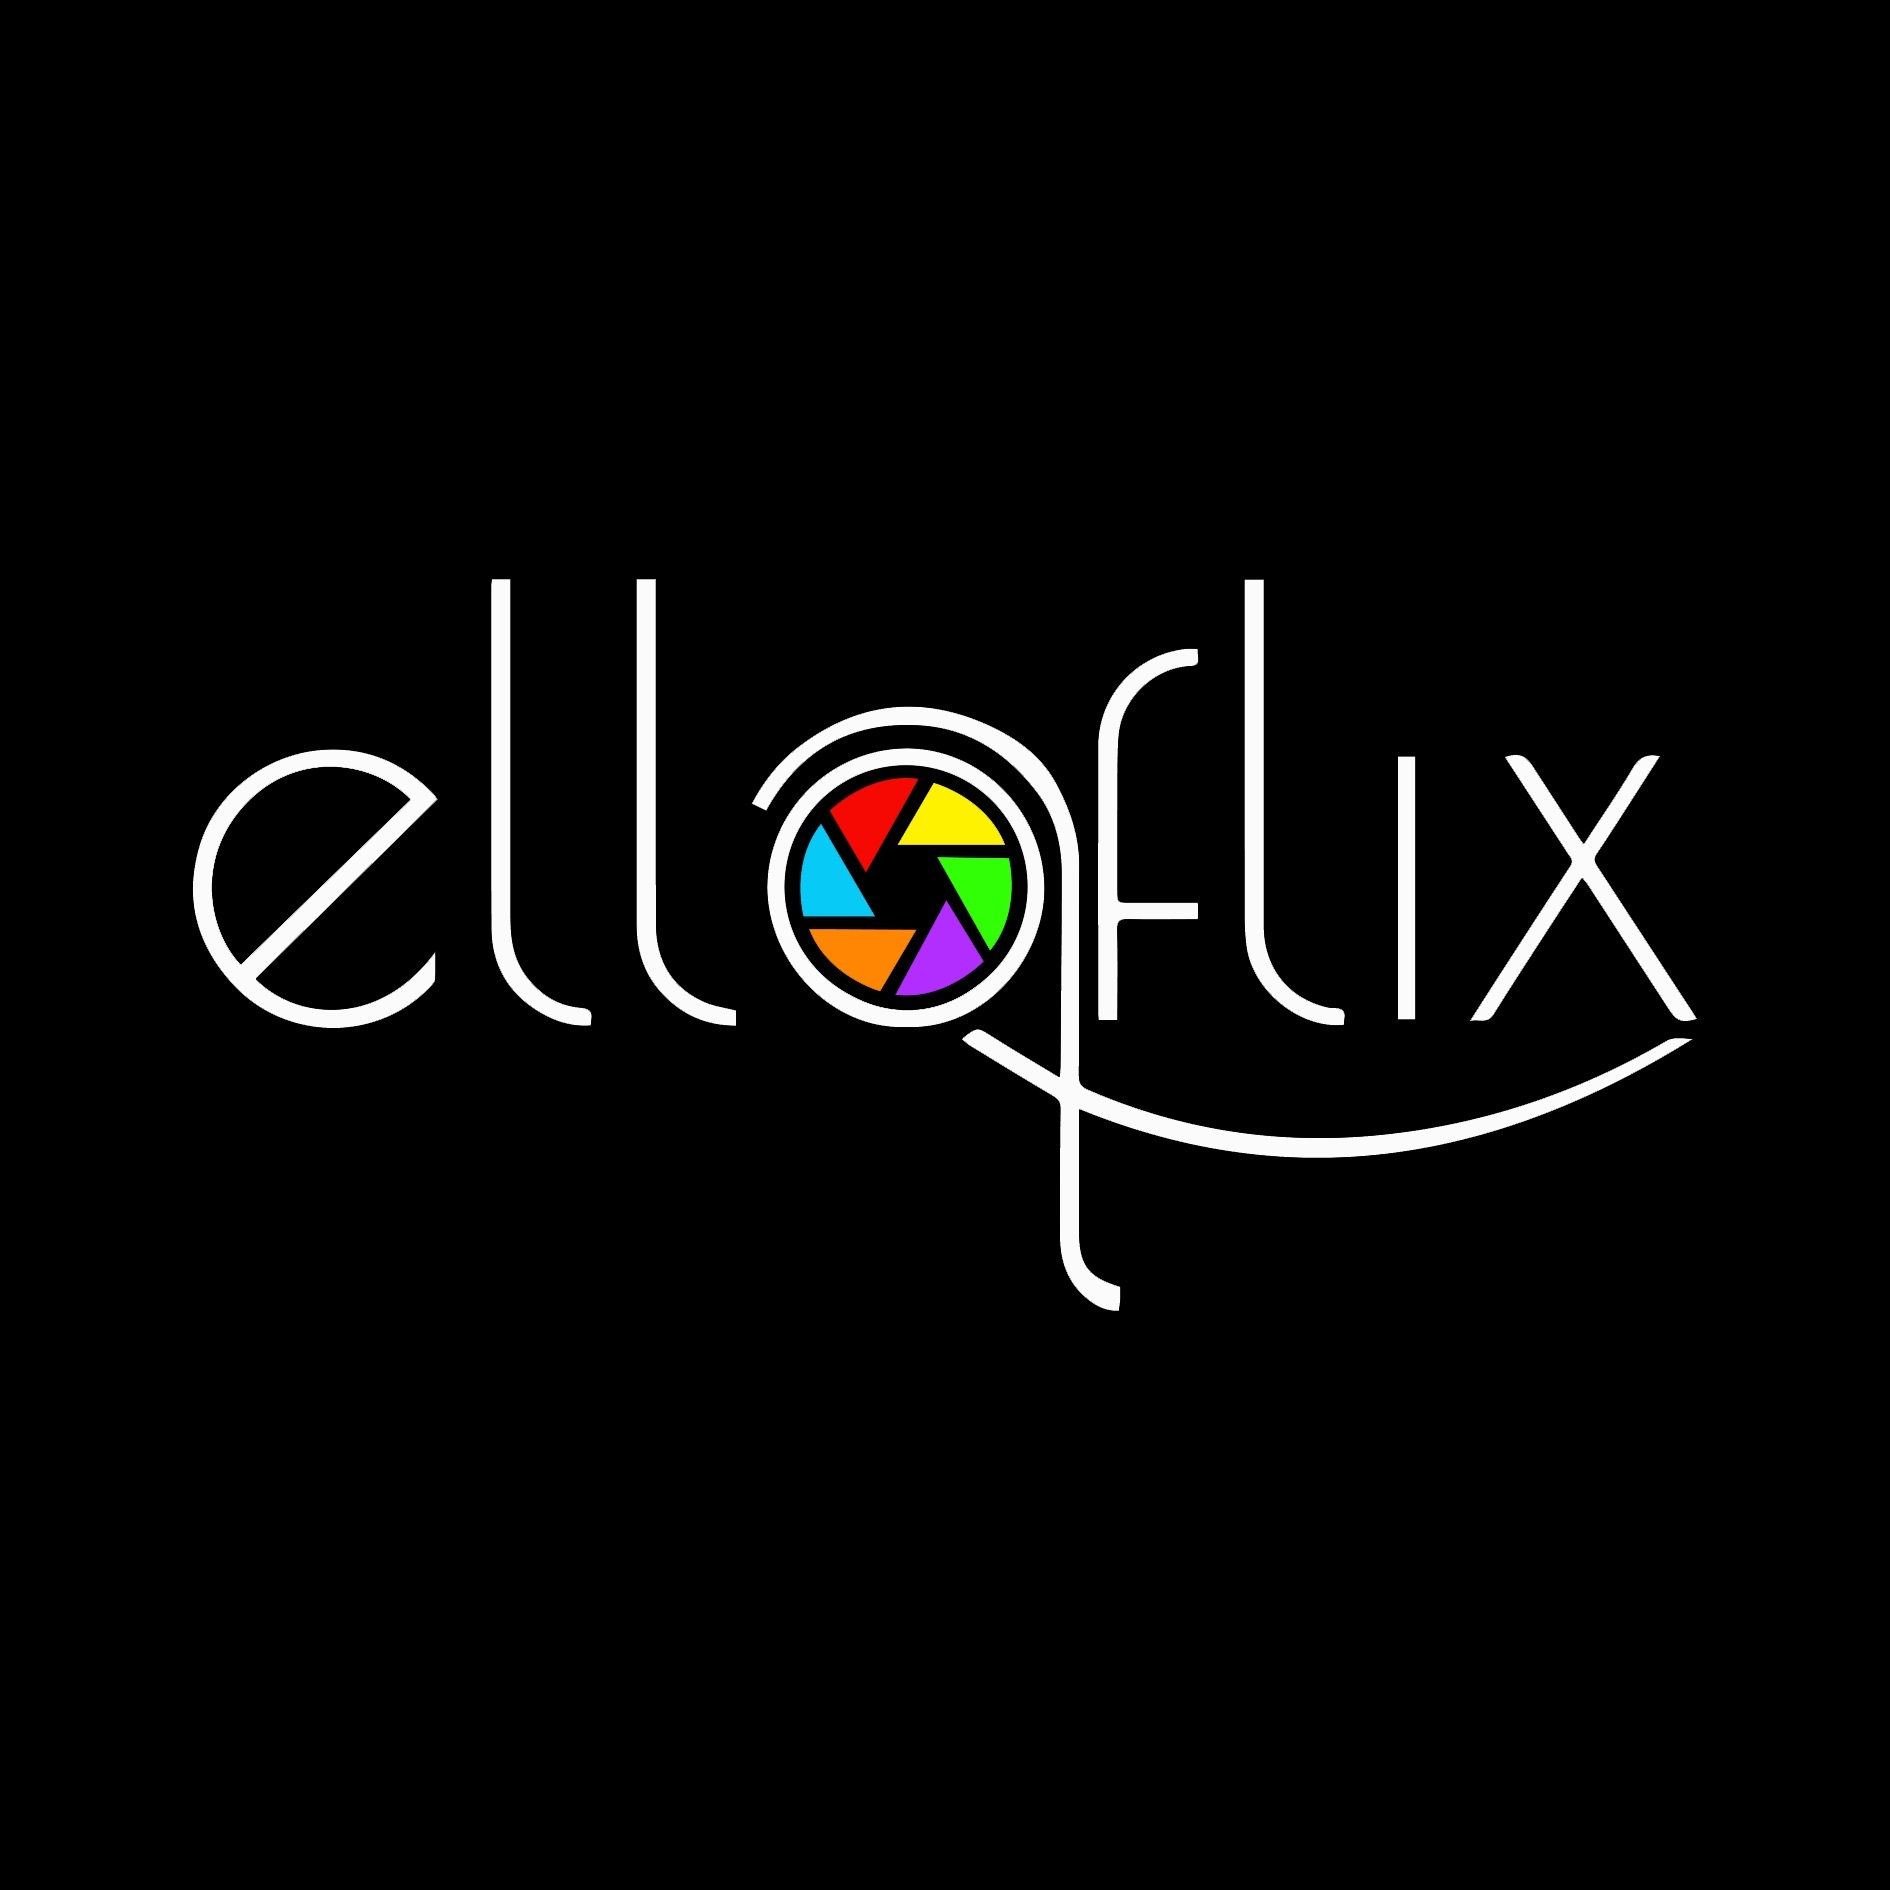 Elloflix photography